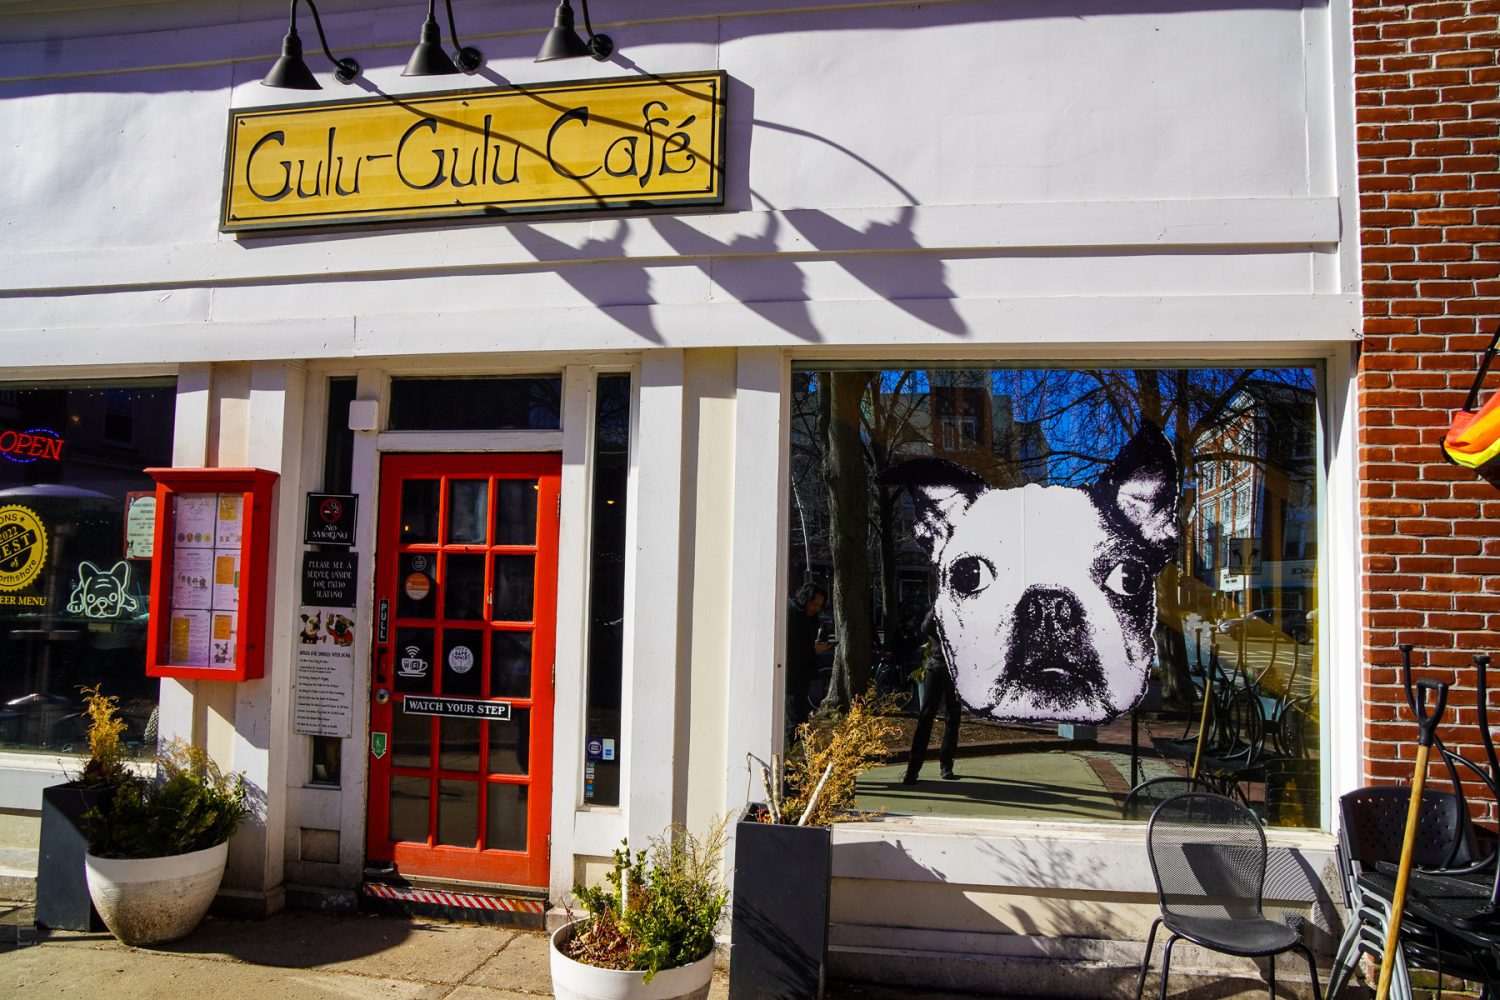 Gulu Gulu cafe, Salem, MA